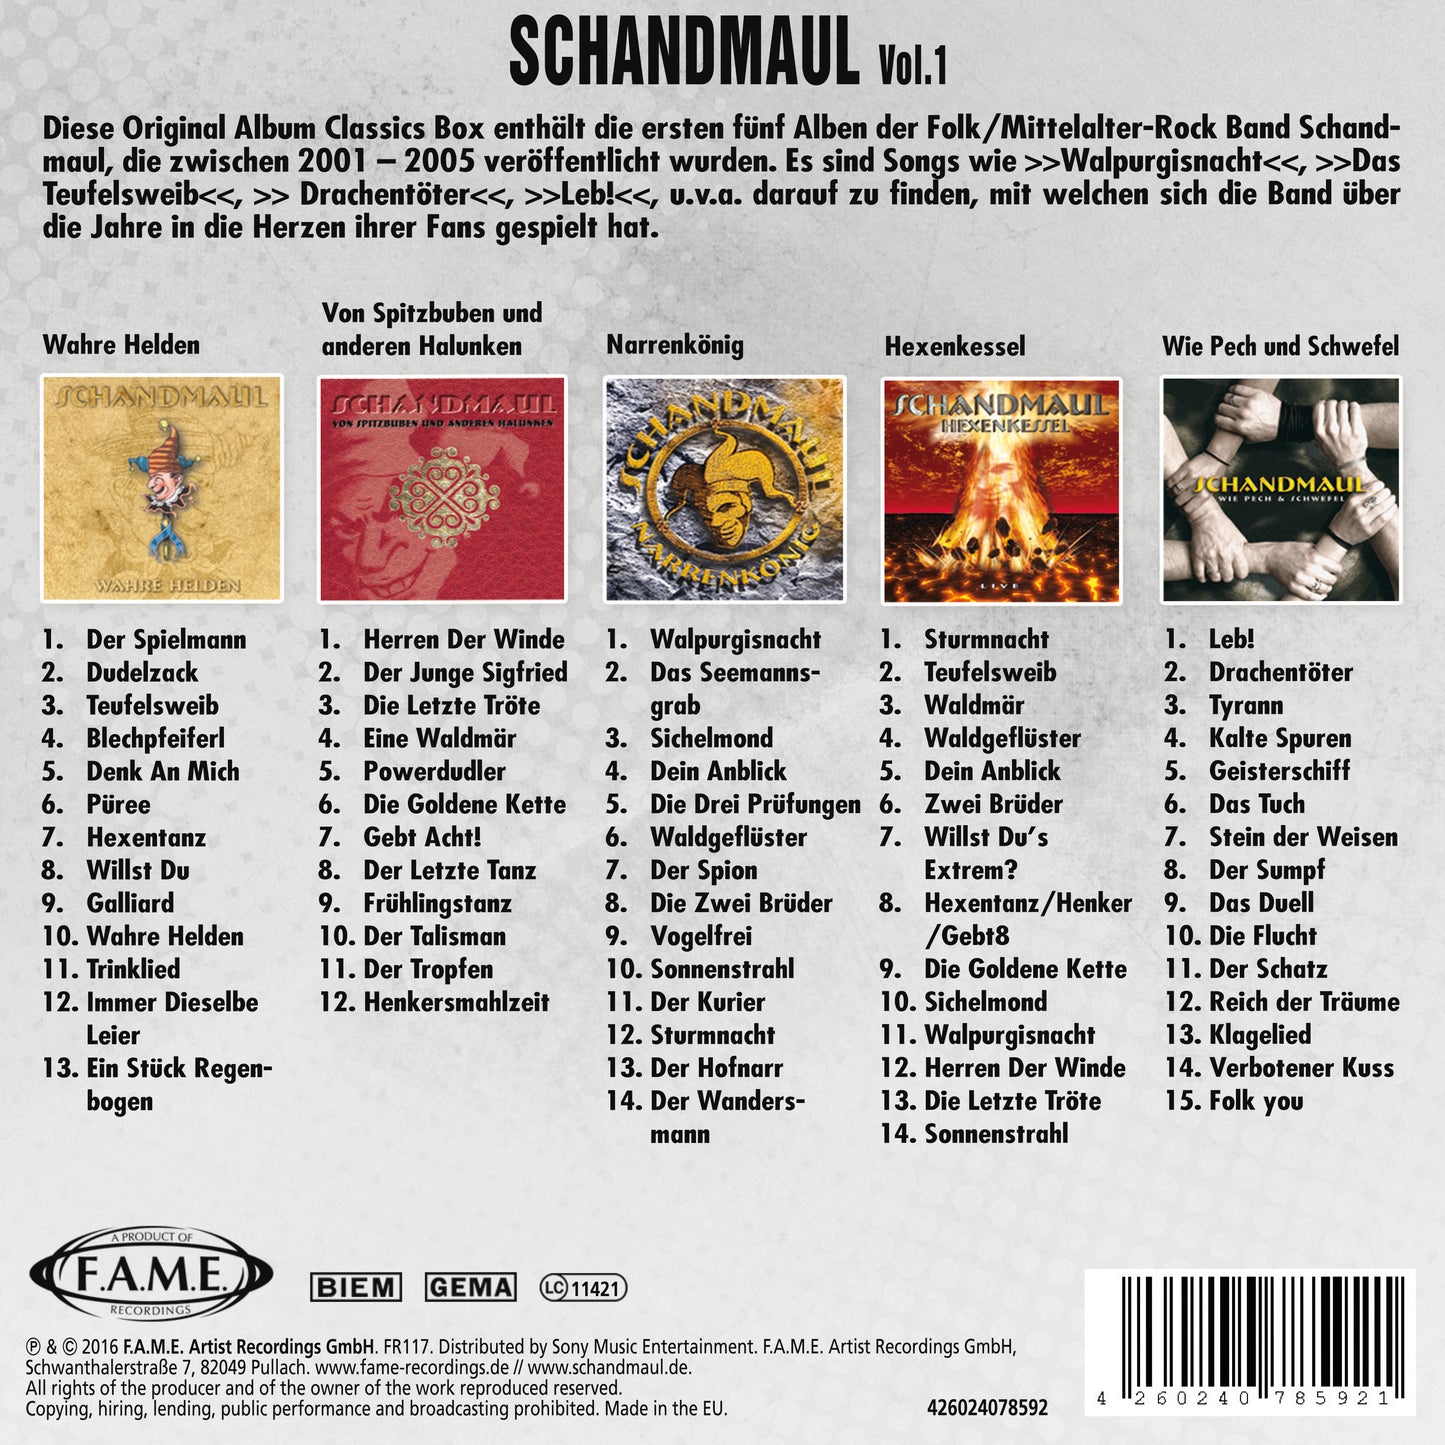 SCHANDMAUL - Original Album Classics Vol. 1 Box-Set